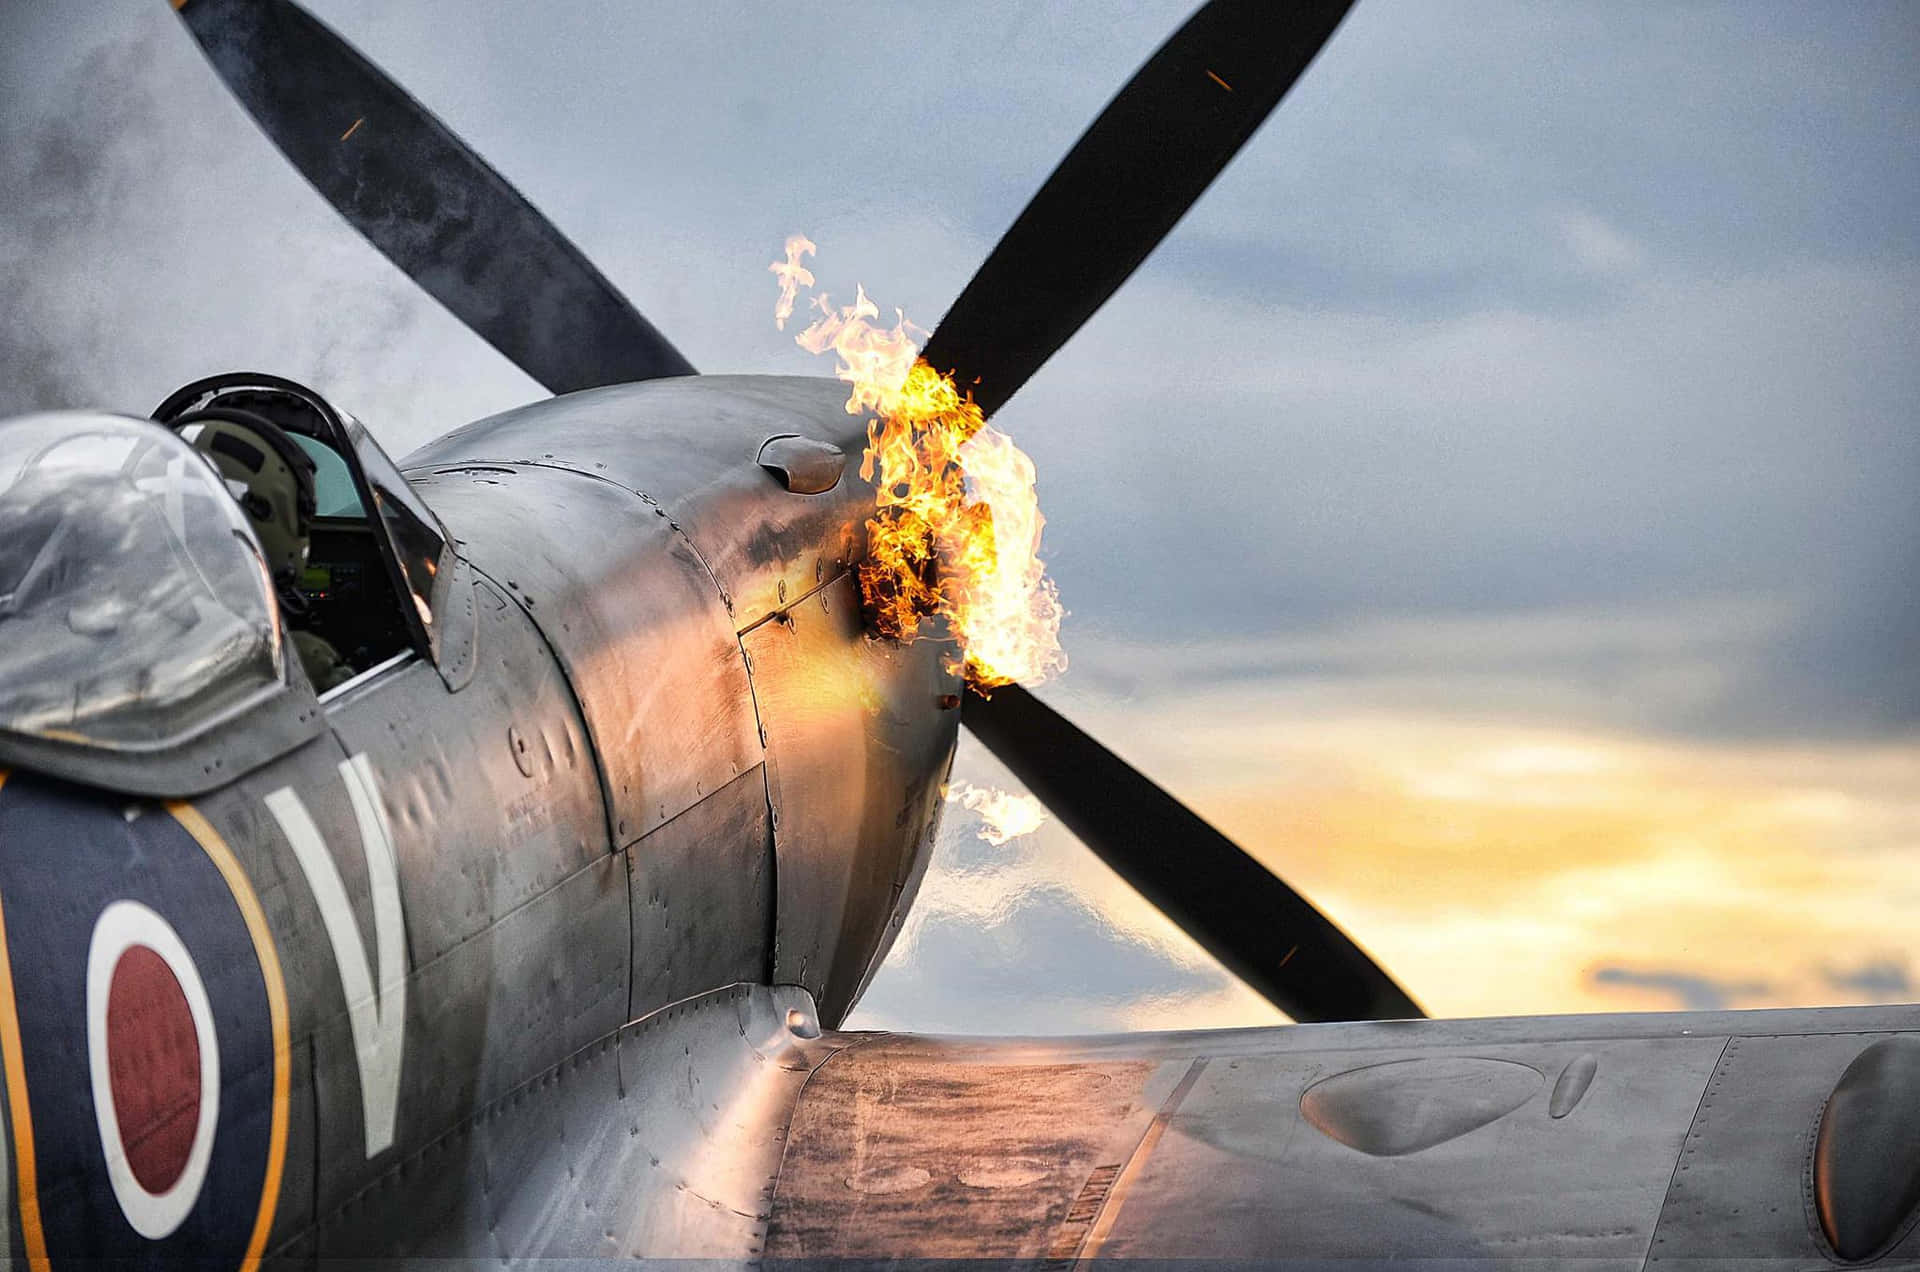 Det ikoniske Spitfire-fly svæver gennem himlen. Wallpaper